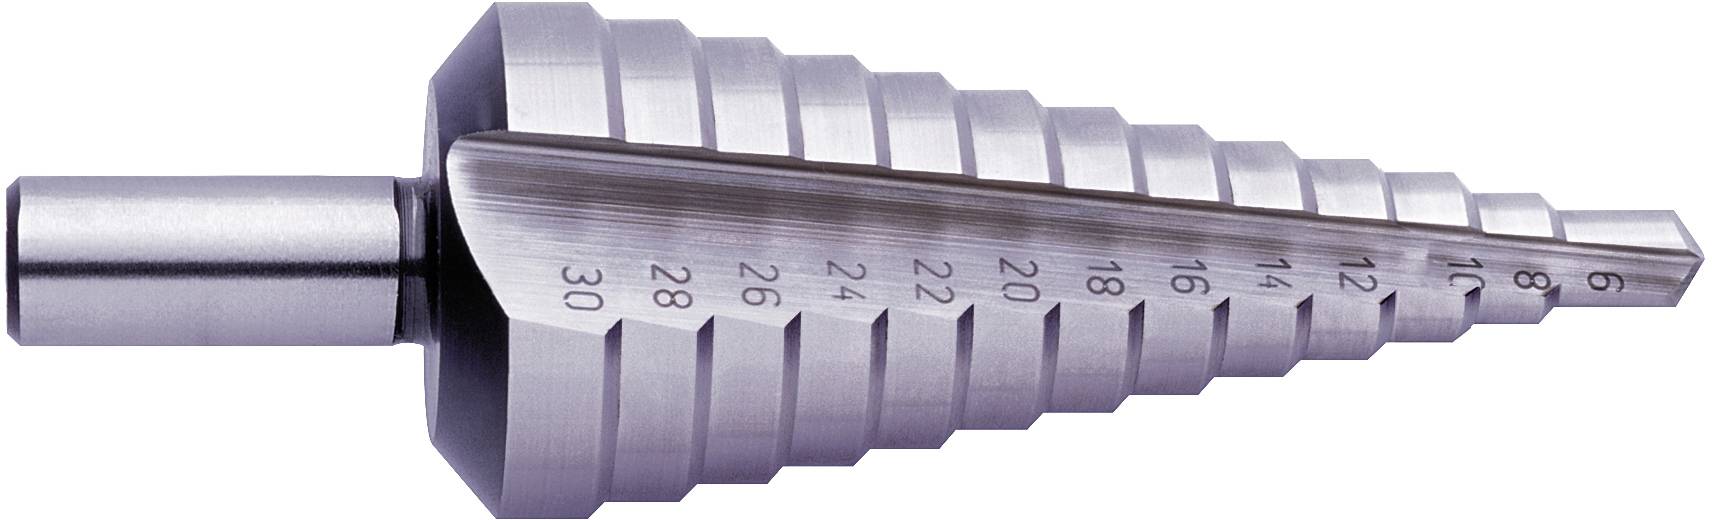 EXACT HSS Stufenbohrer 9 - 36 mm 05330 Gesamtlänge 86 mm 3-Flächenschaft 1 Stück (05330)